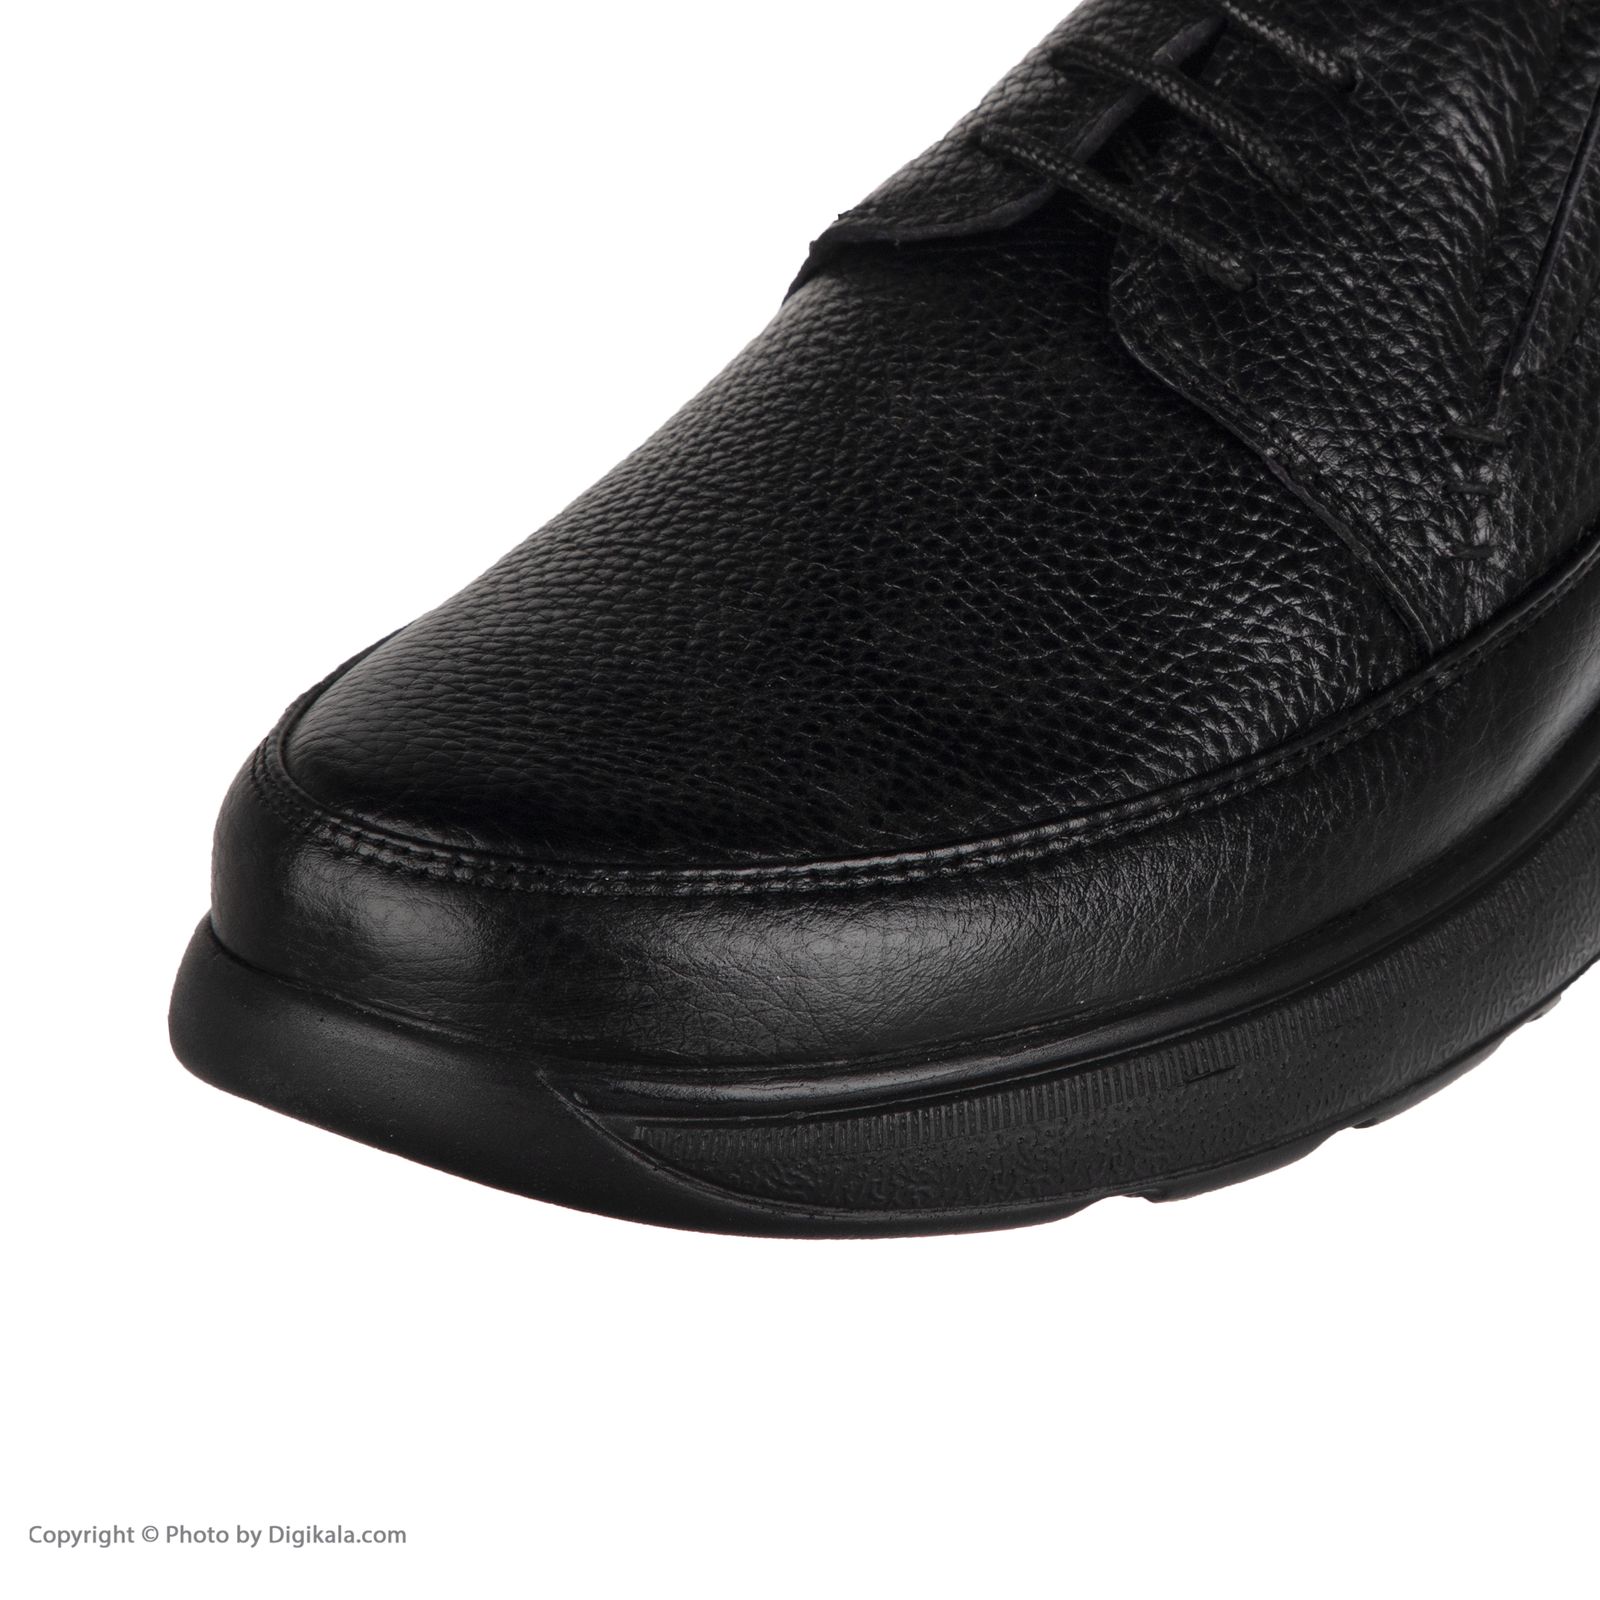  کفش روزمره مردانه سوته مدل 4931B503101 -  - 8